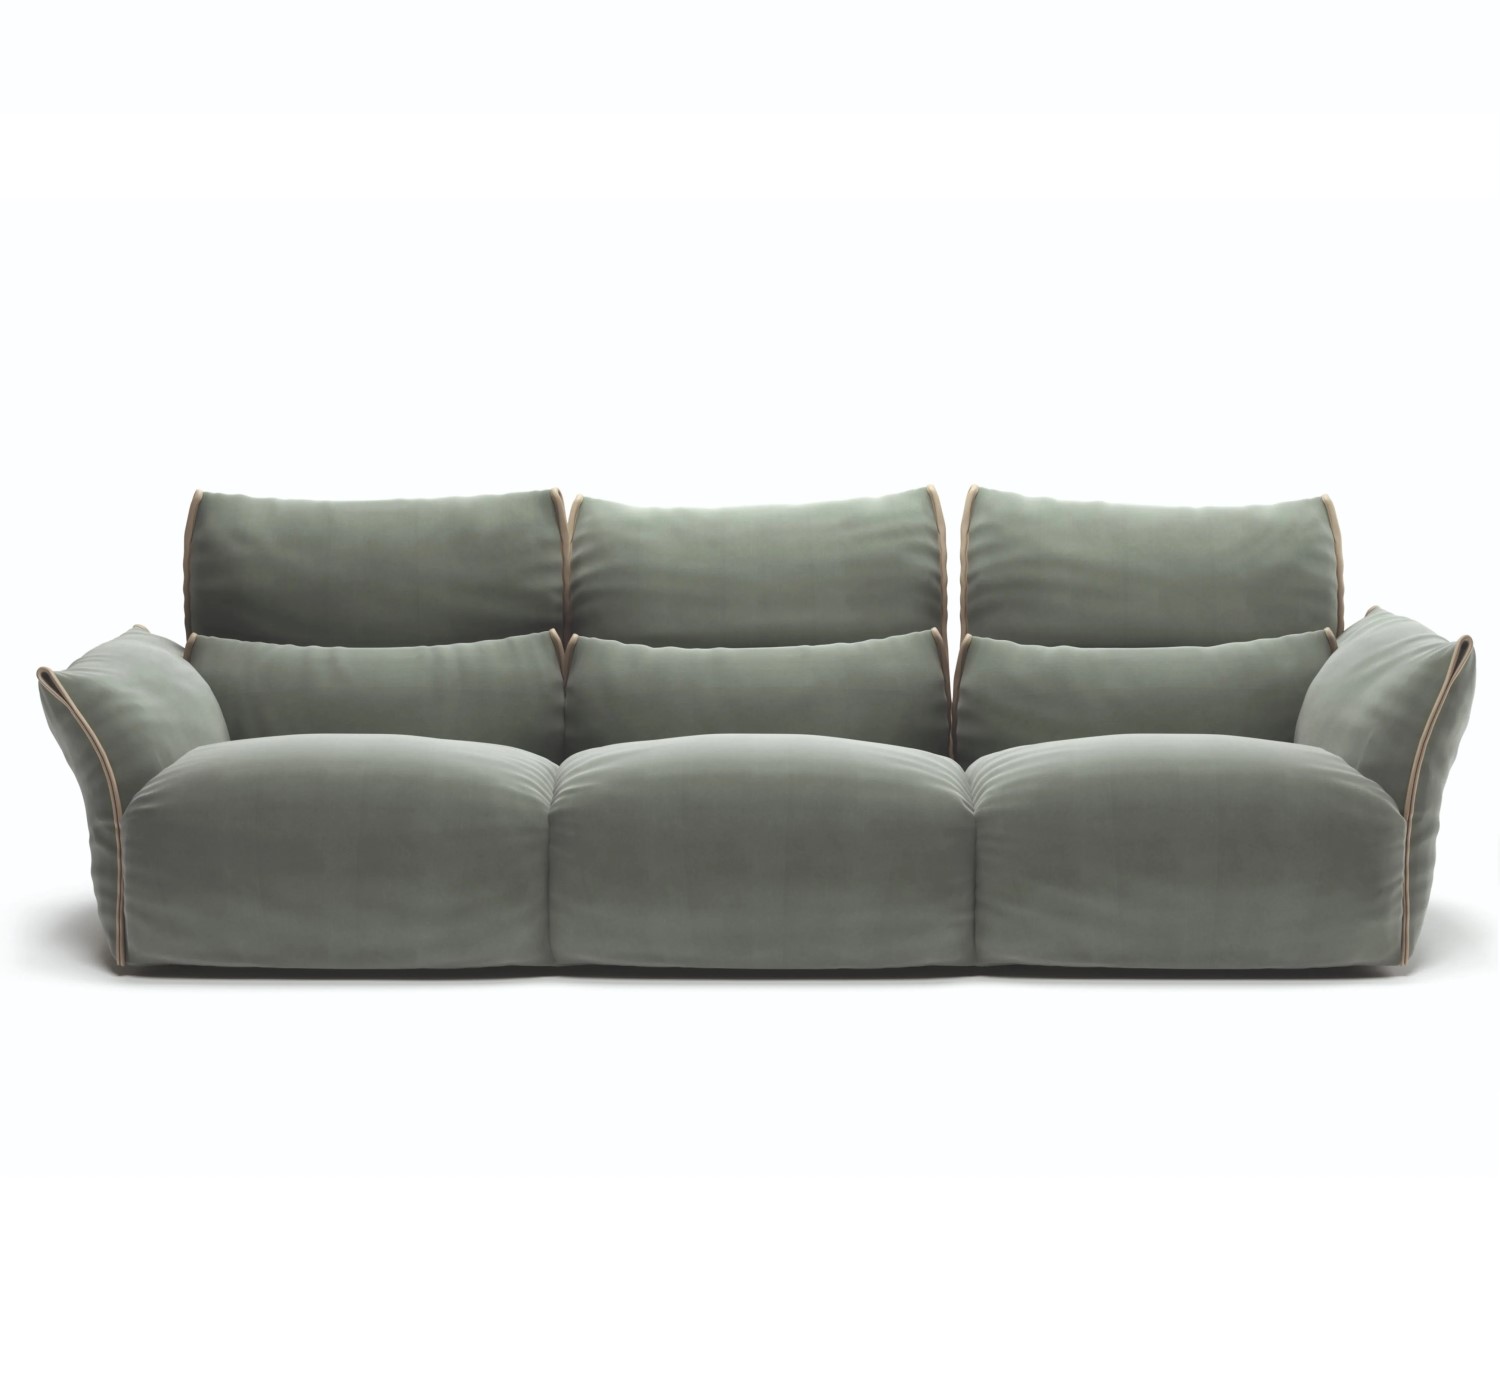 Wellbe sofa by Natuzzi Italia